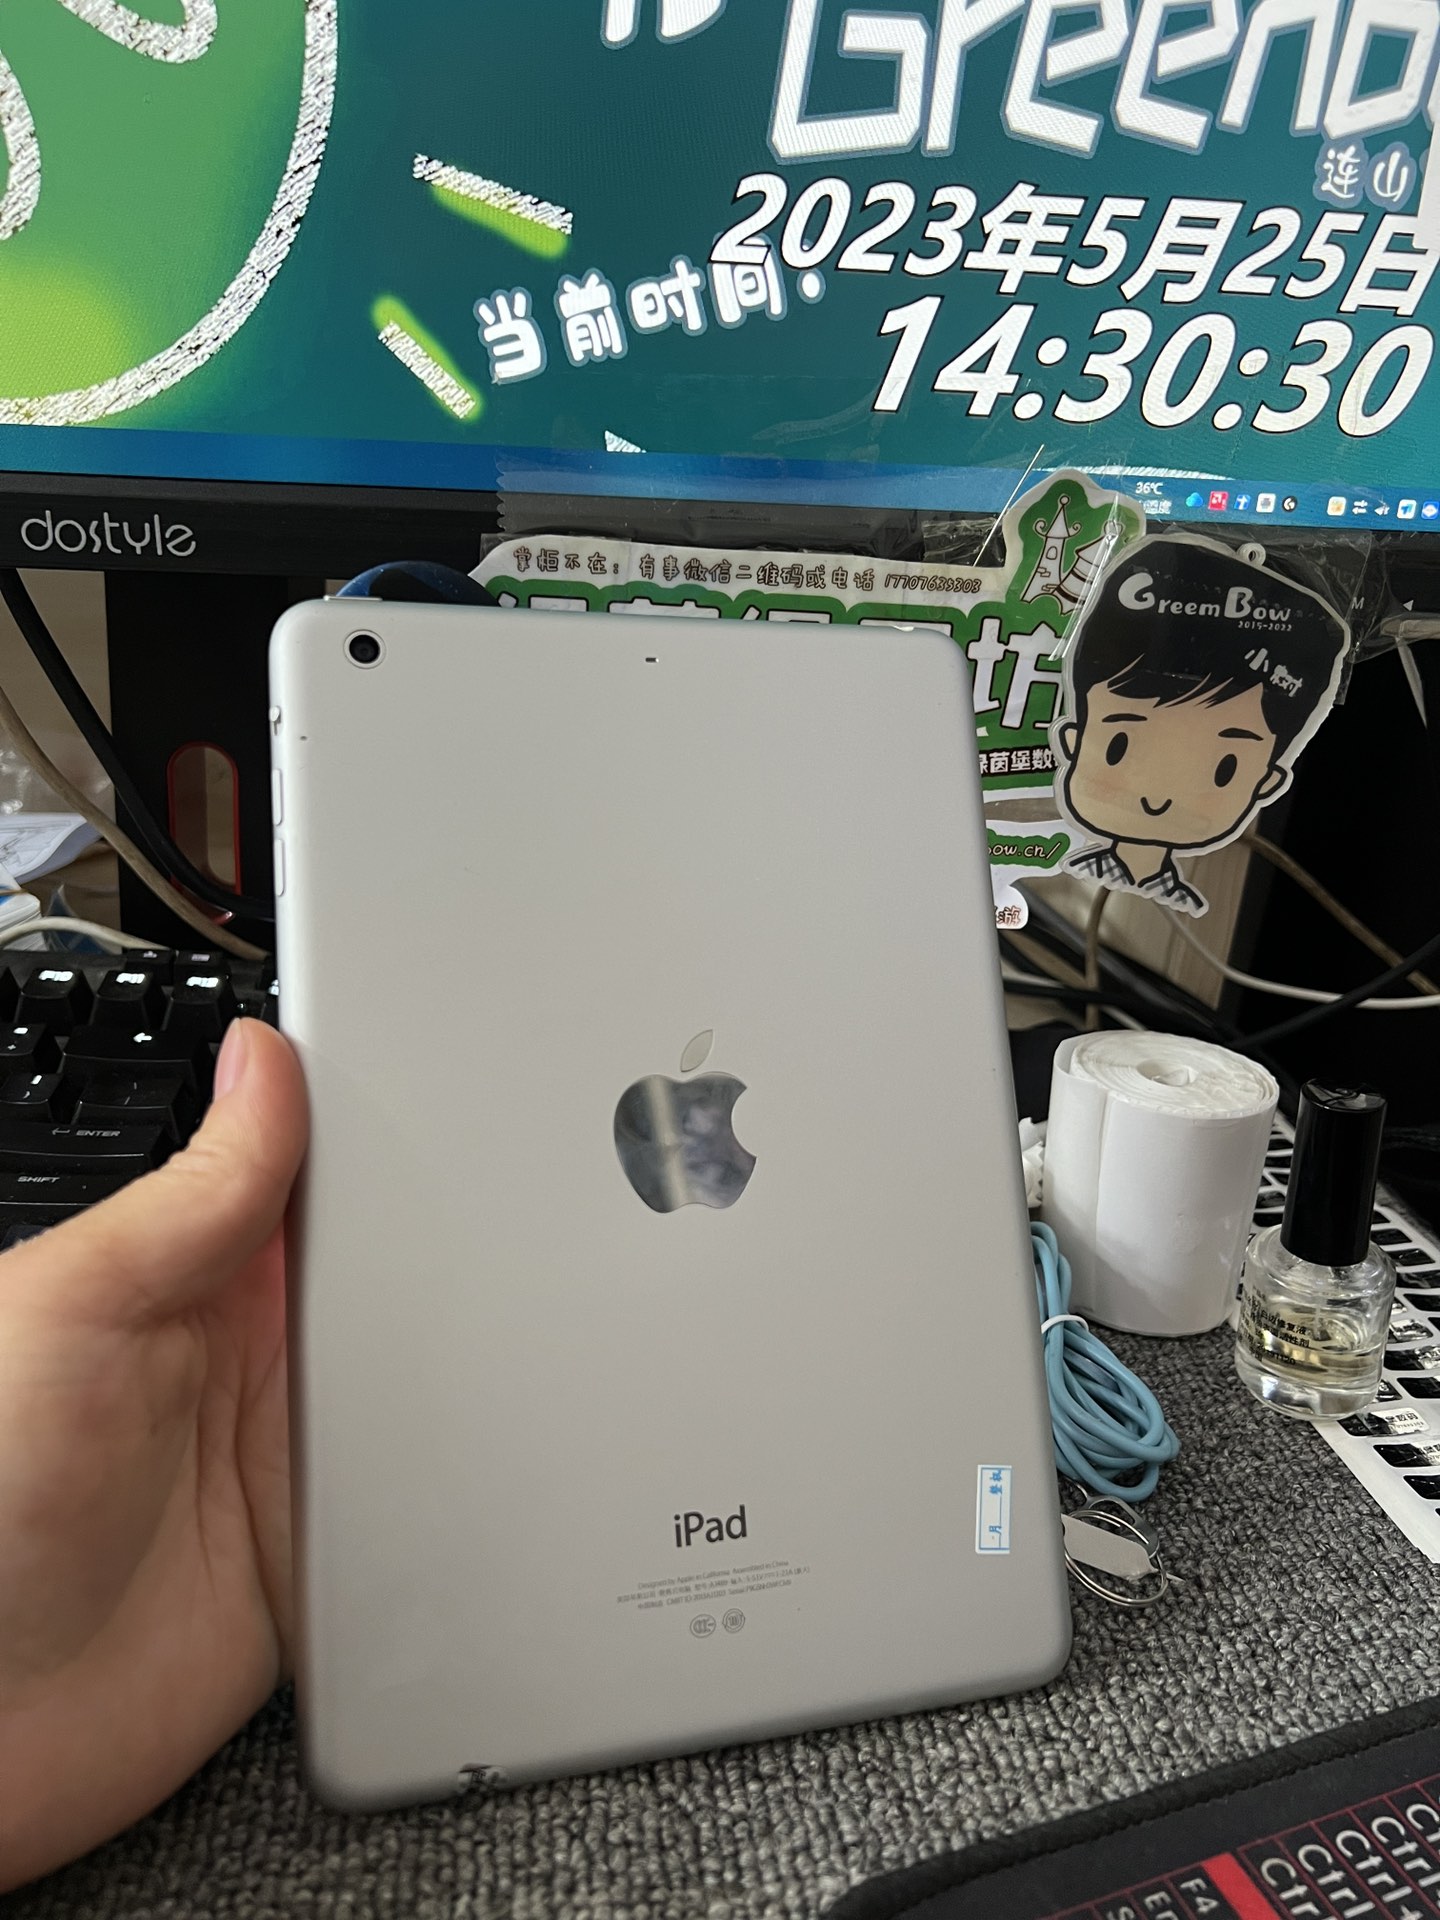 169元 国行iPad mini2 银色 16G Wi-Fi版本 这台是工厂激活 不能 - 现货靓机 - 绿茵堡数码 - Powered